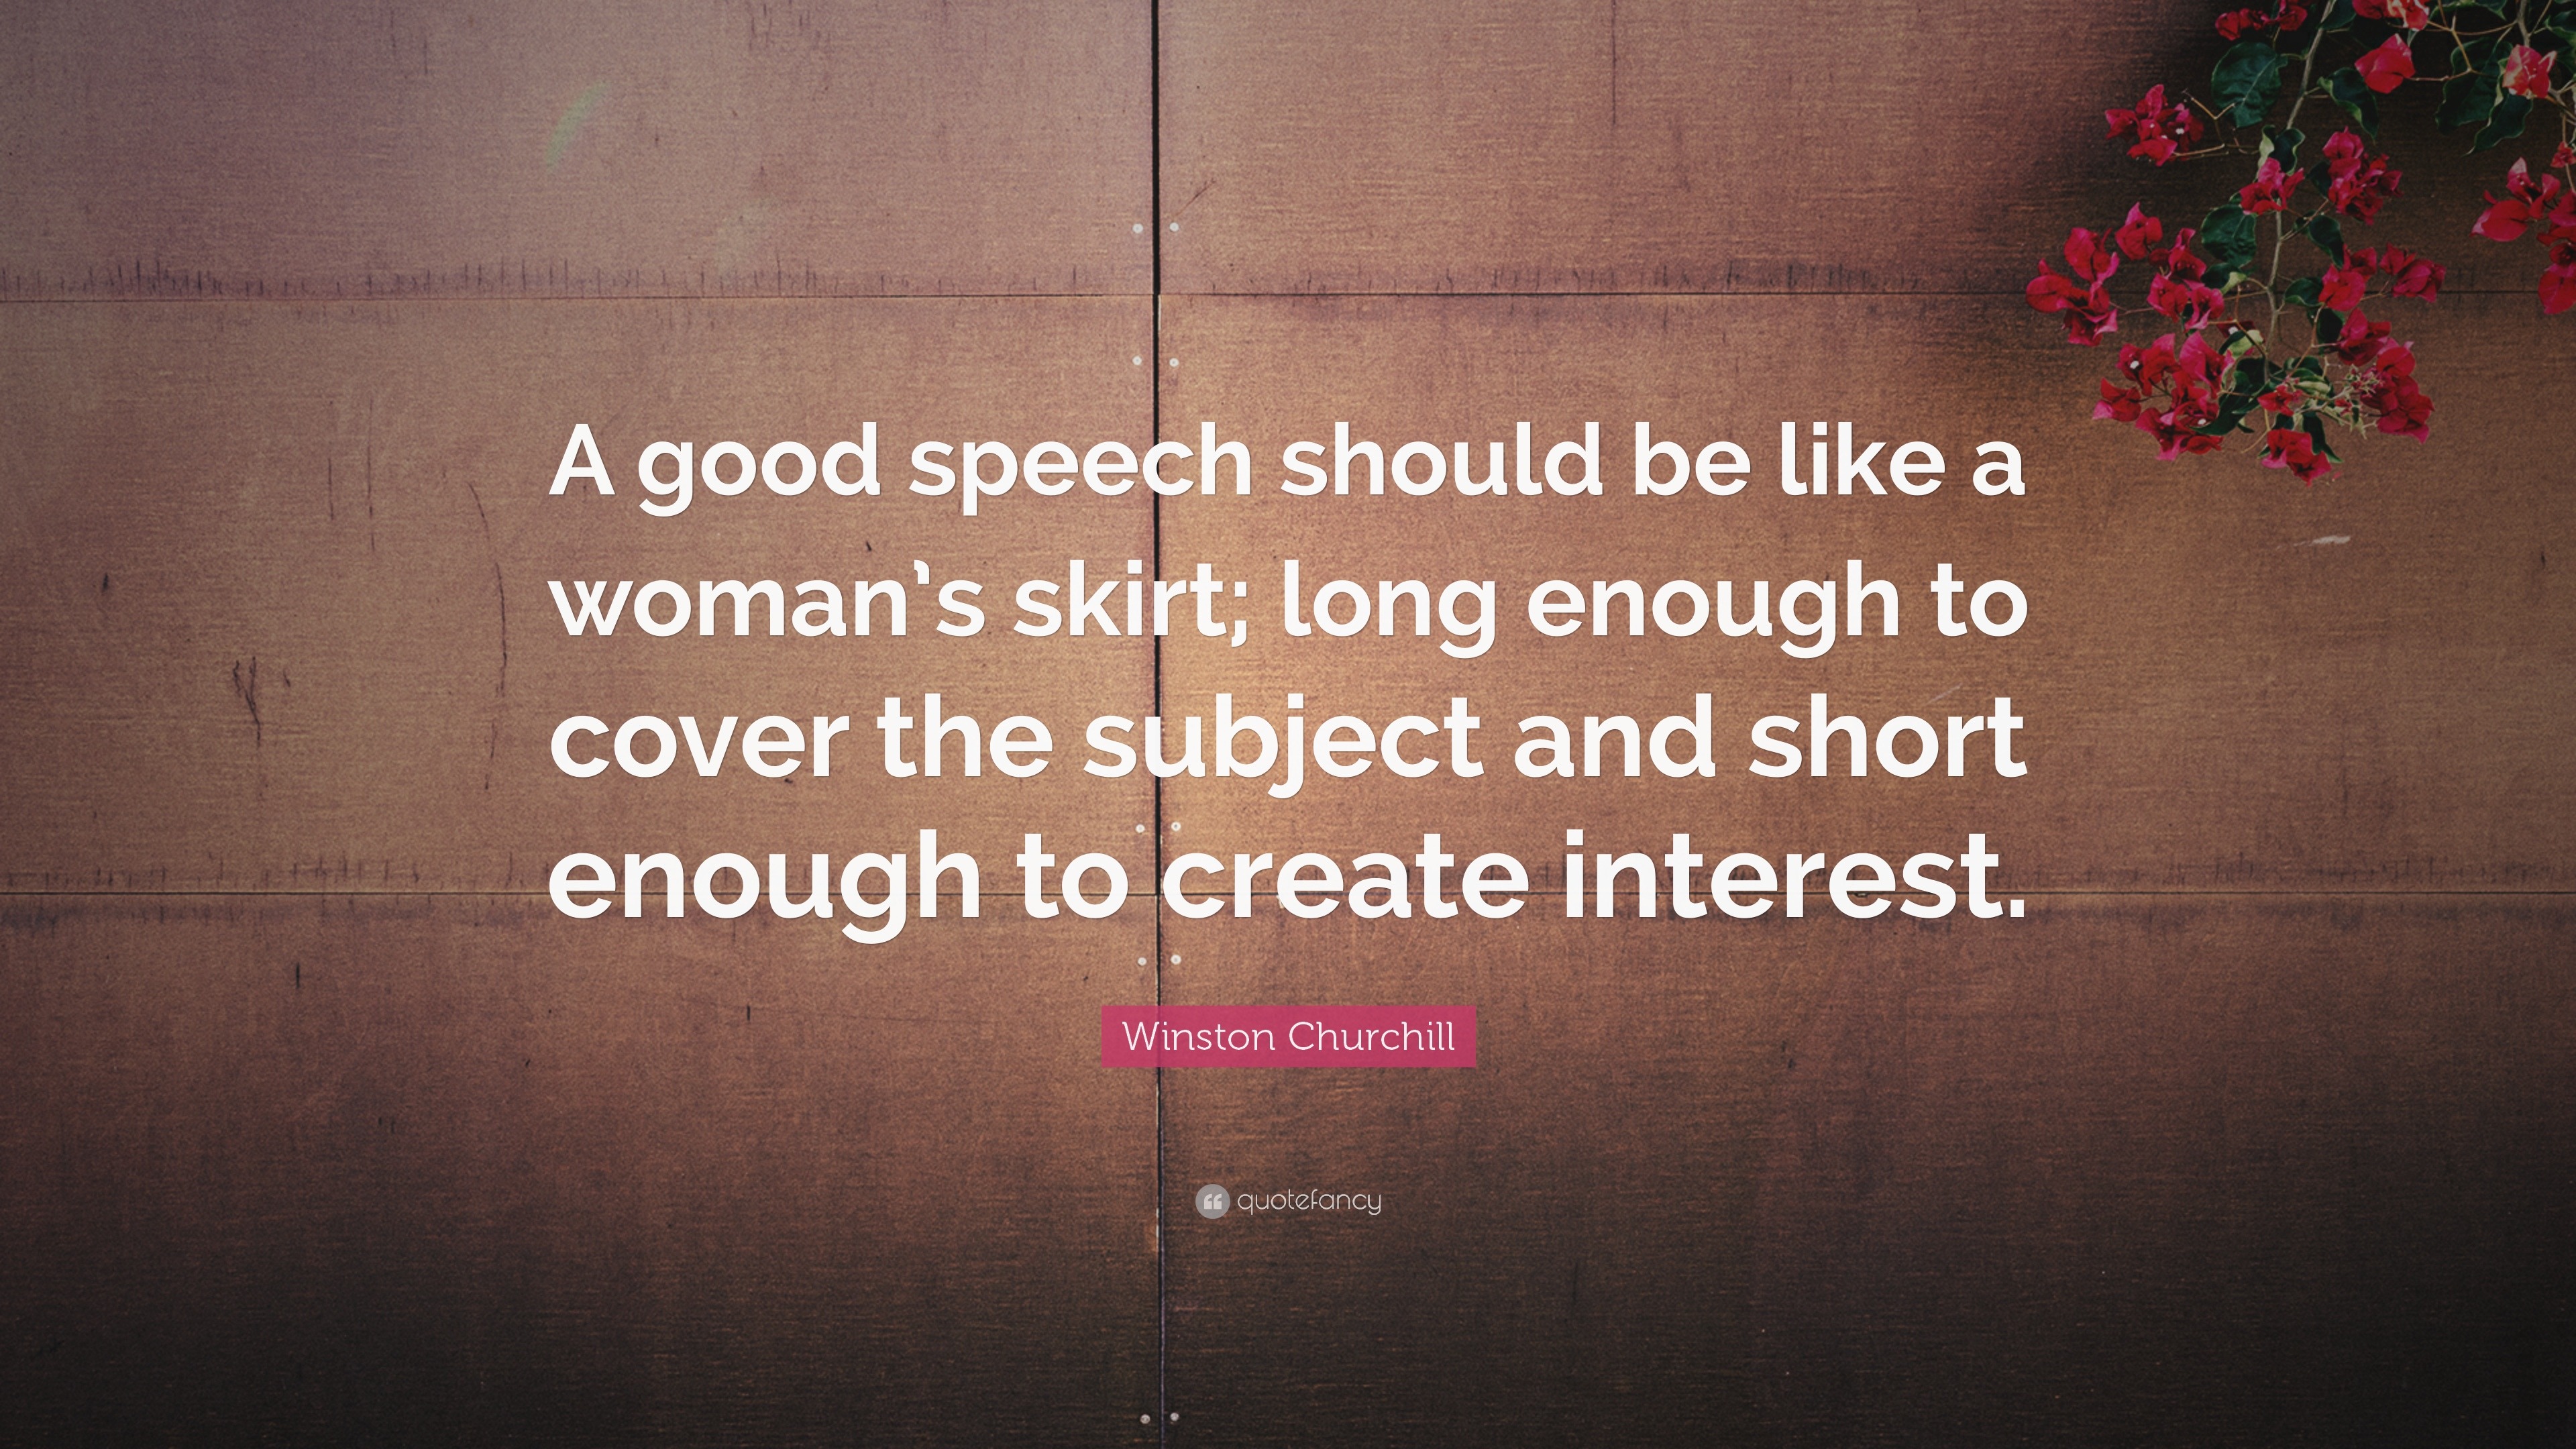 good speech should be like a woman's skirt